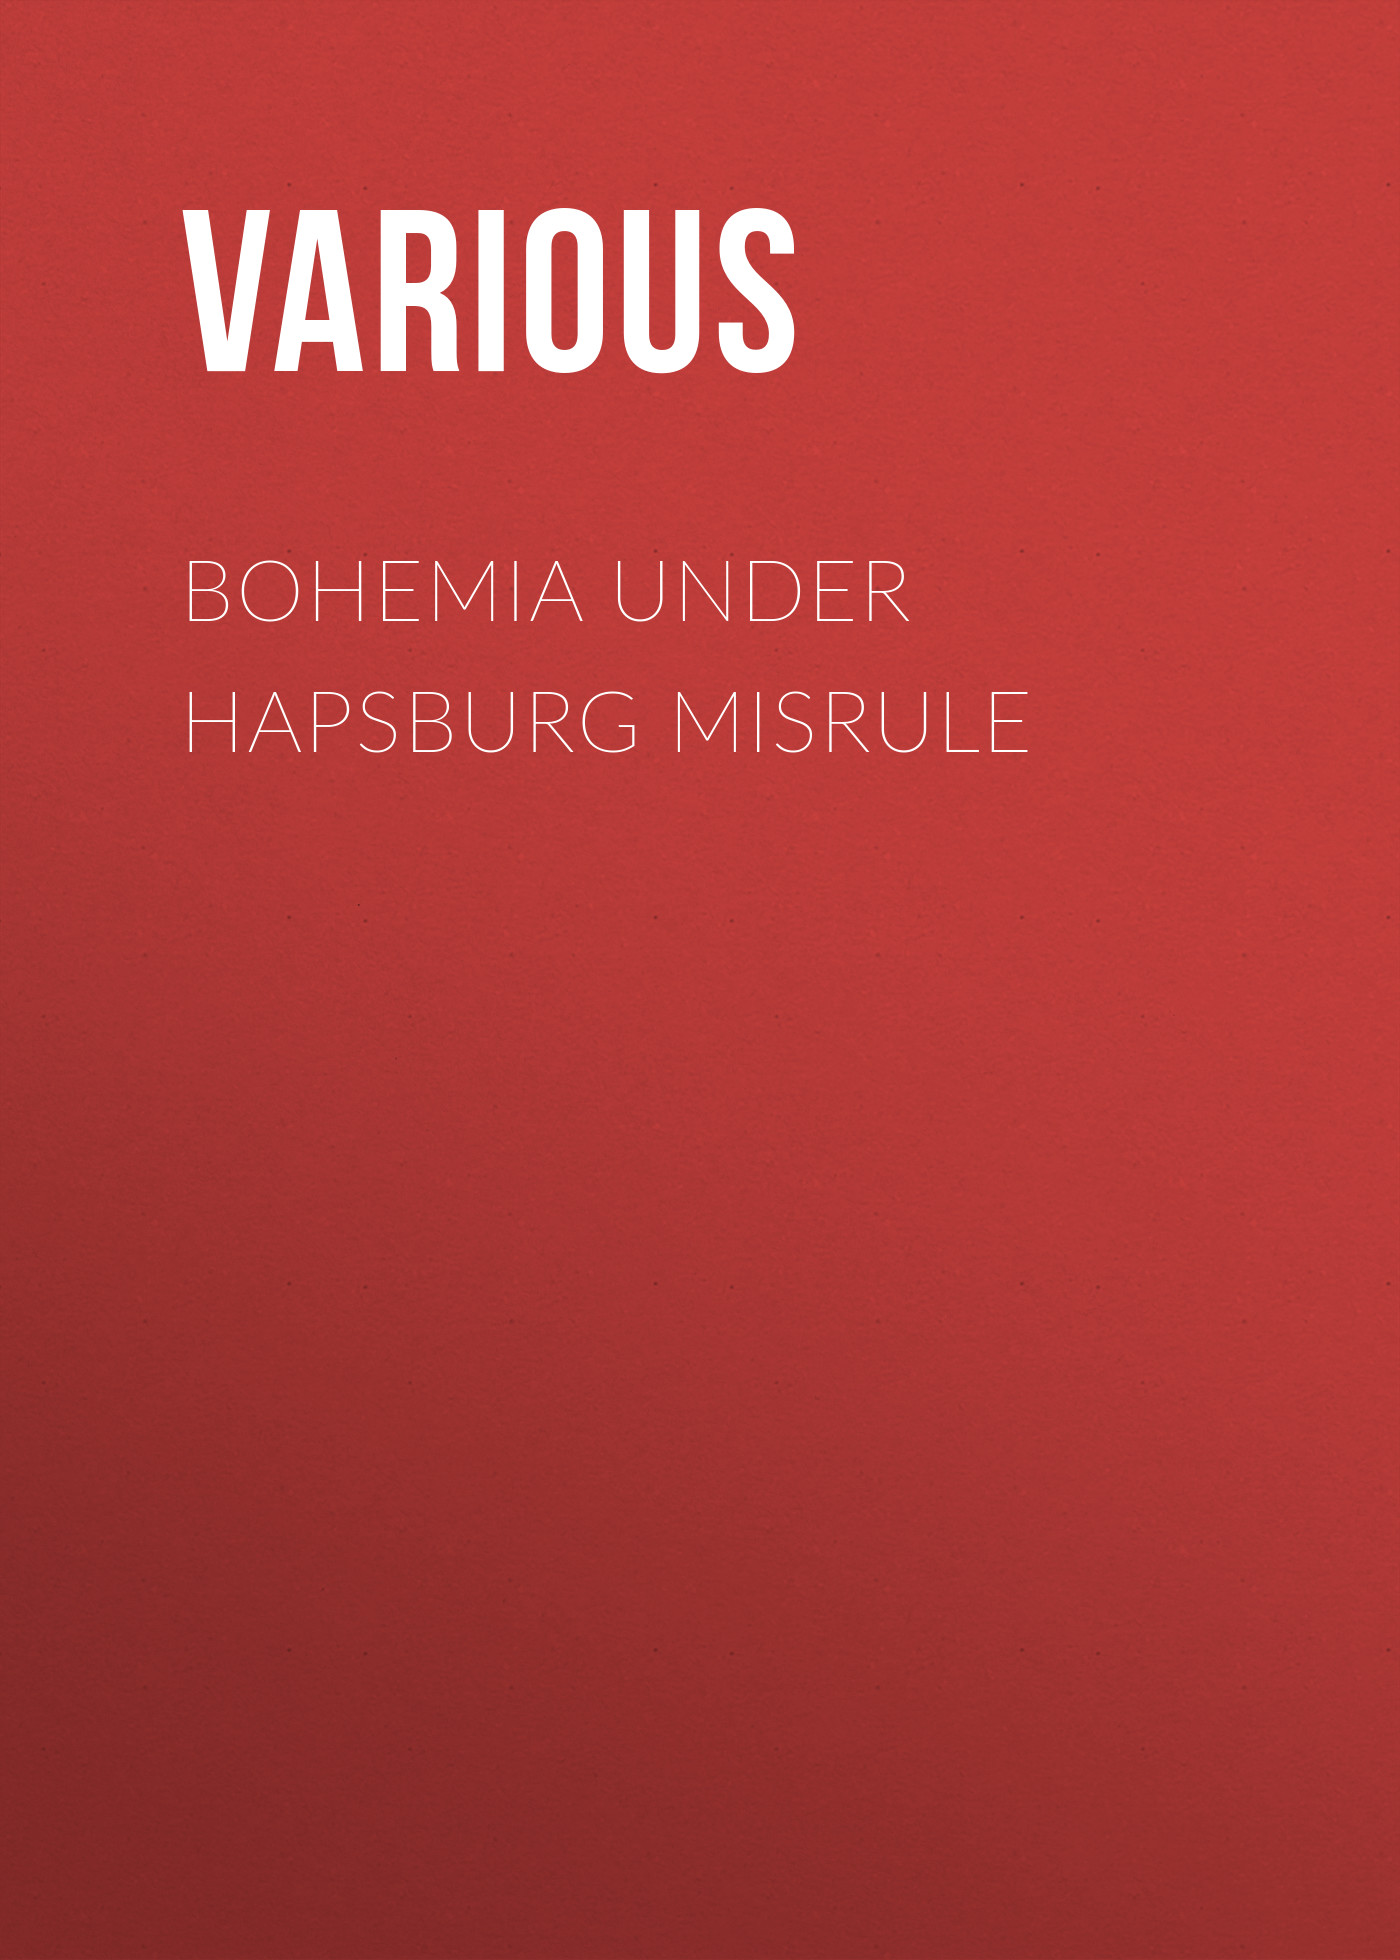 Книга Bohemia under Hapsburg Misrule из серии , созданная  Various, может относится к жанру История, Зарубежная образовательная литература. Стоимость электронной книги Bohemia under Hapsburg Misrule с идентификатором 25571095 составляет 0 руб.